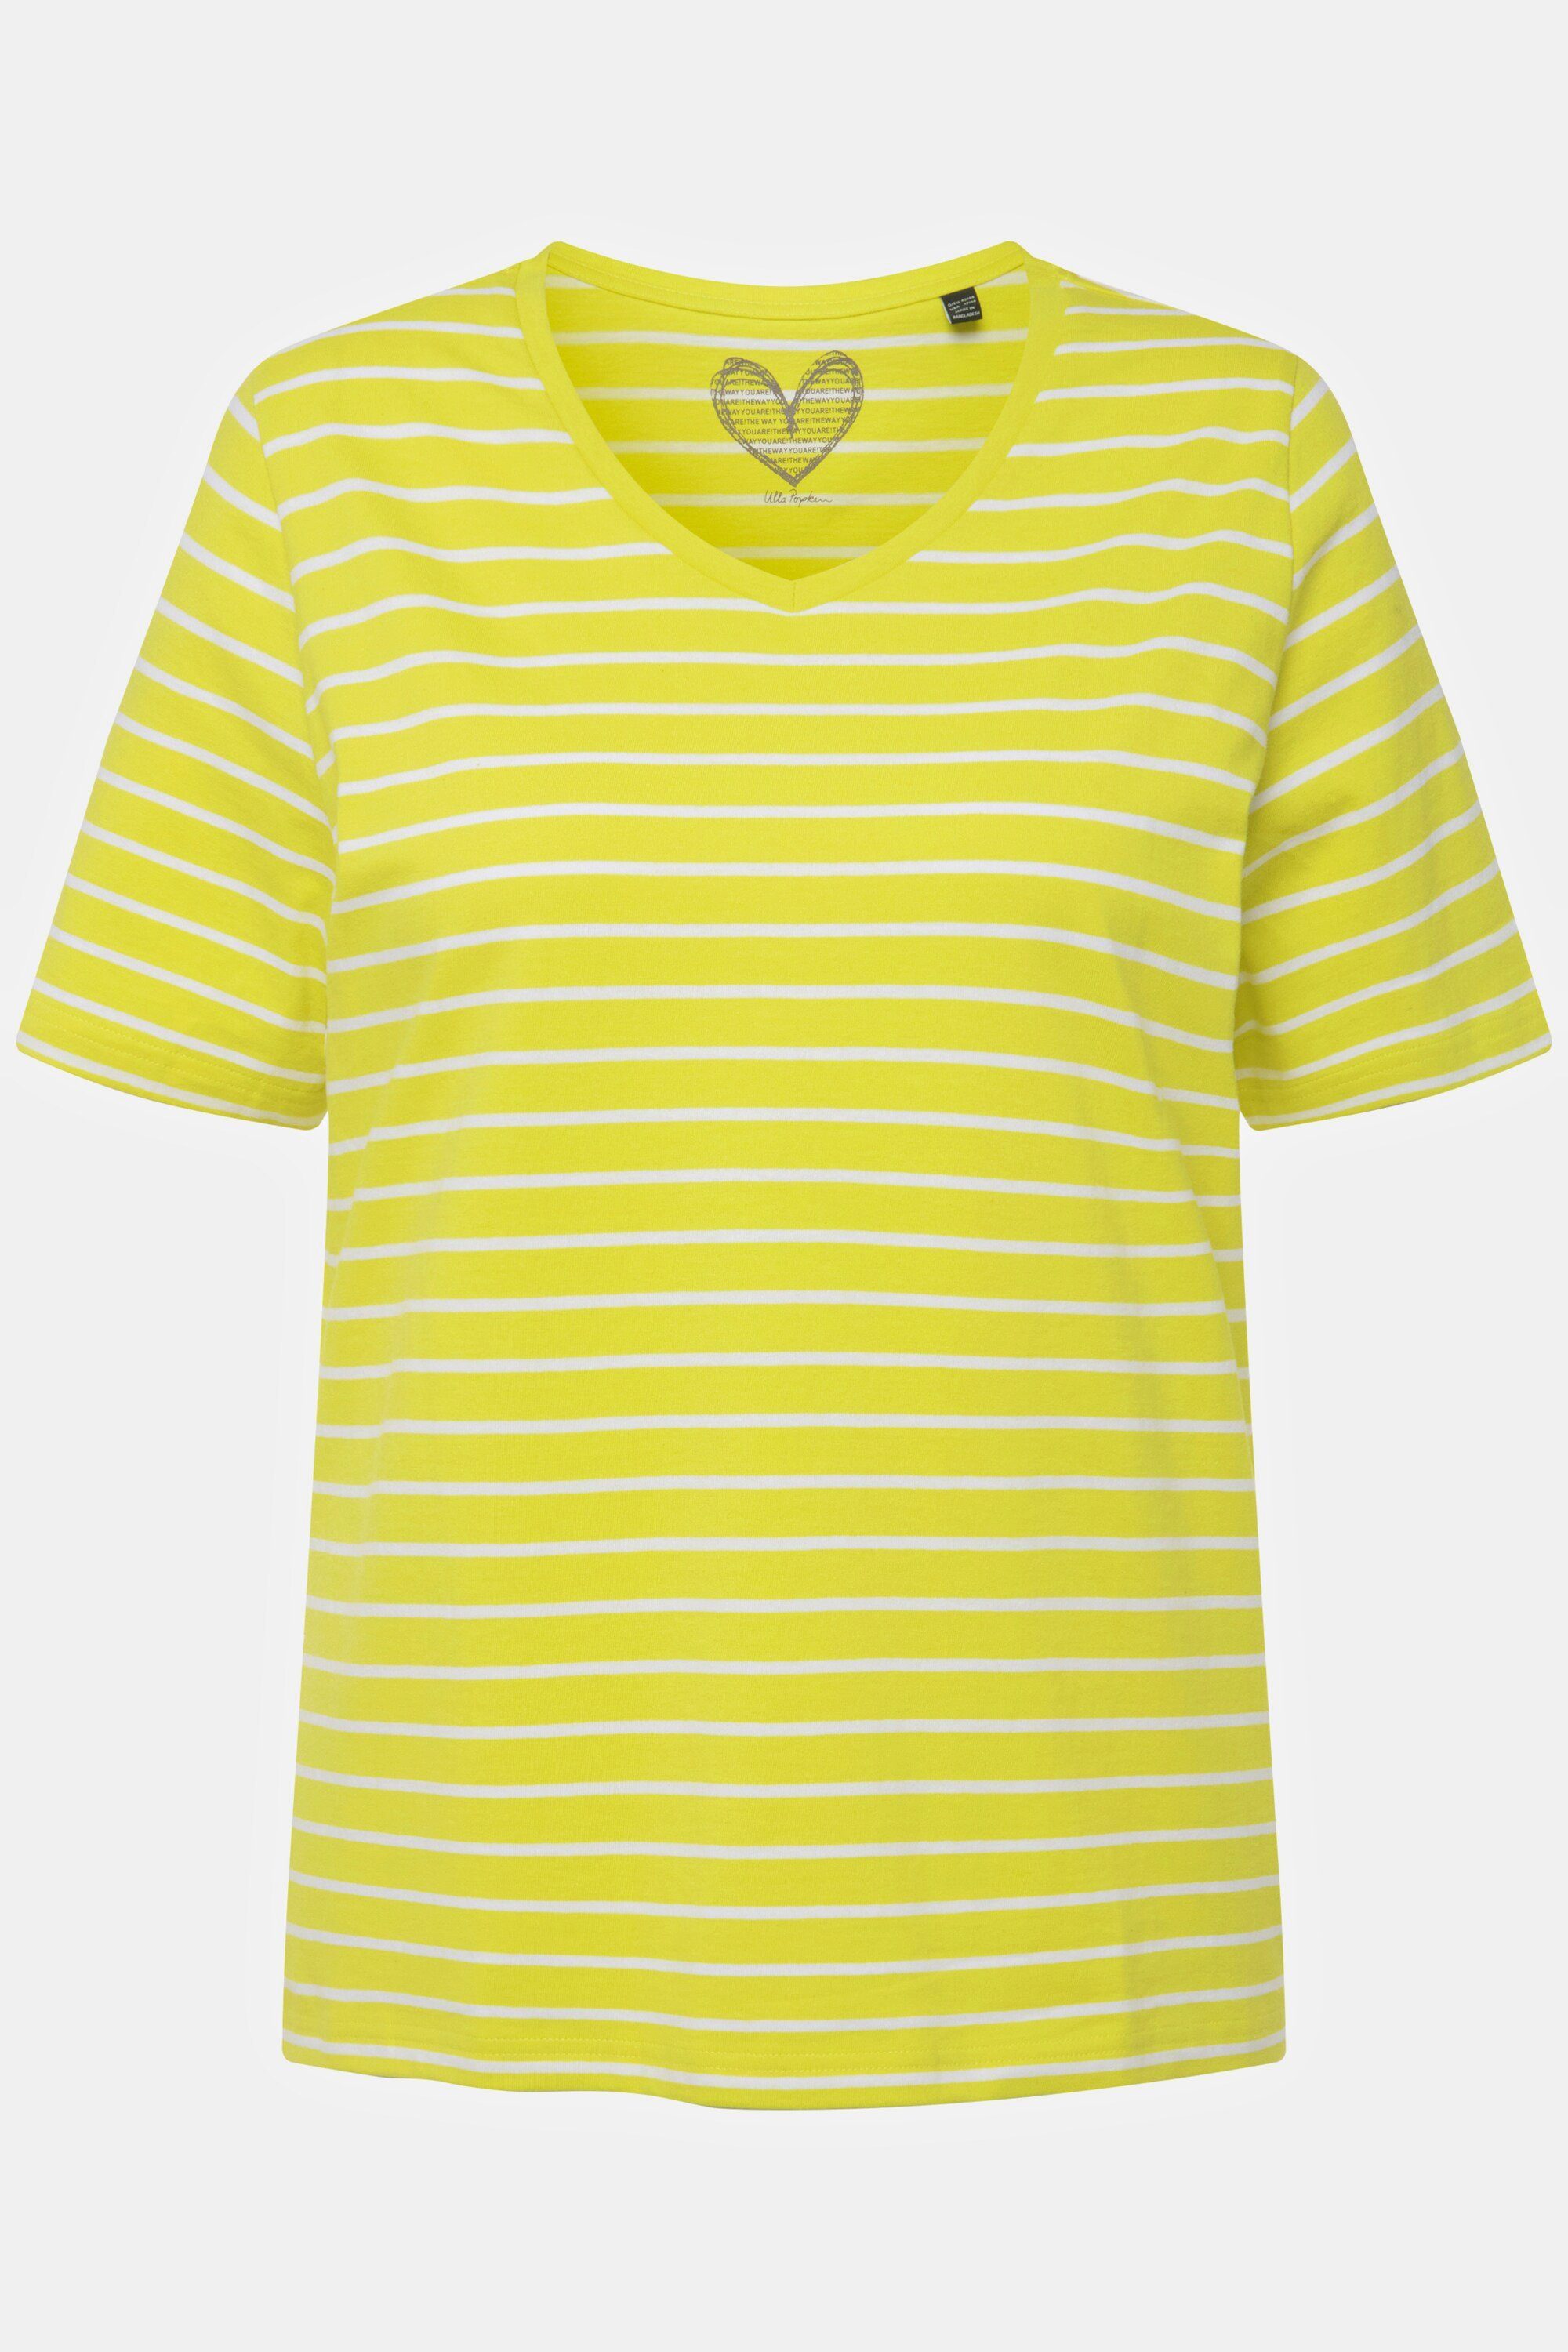 Ulla Popken T-Shirt Halbarm gelbgrün Rundhalsshirt Ringel V-Ausschnitt